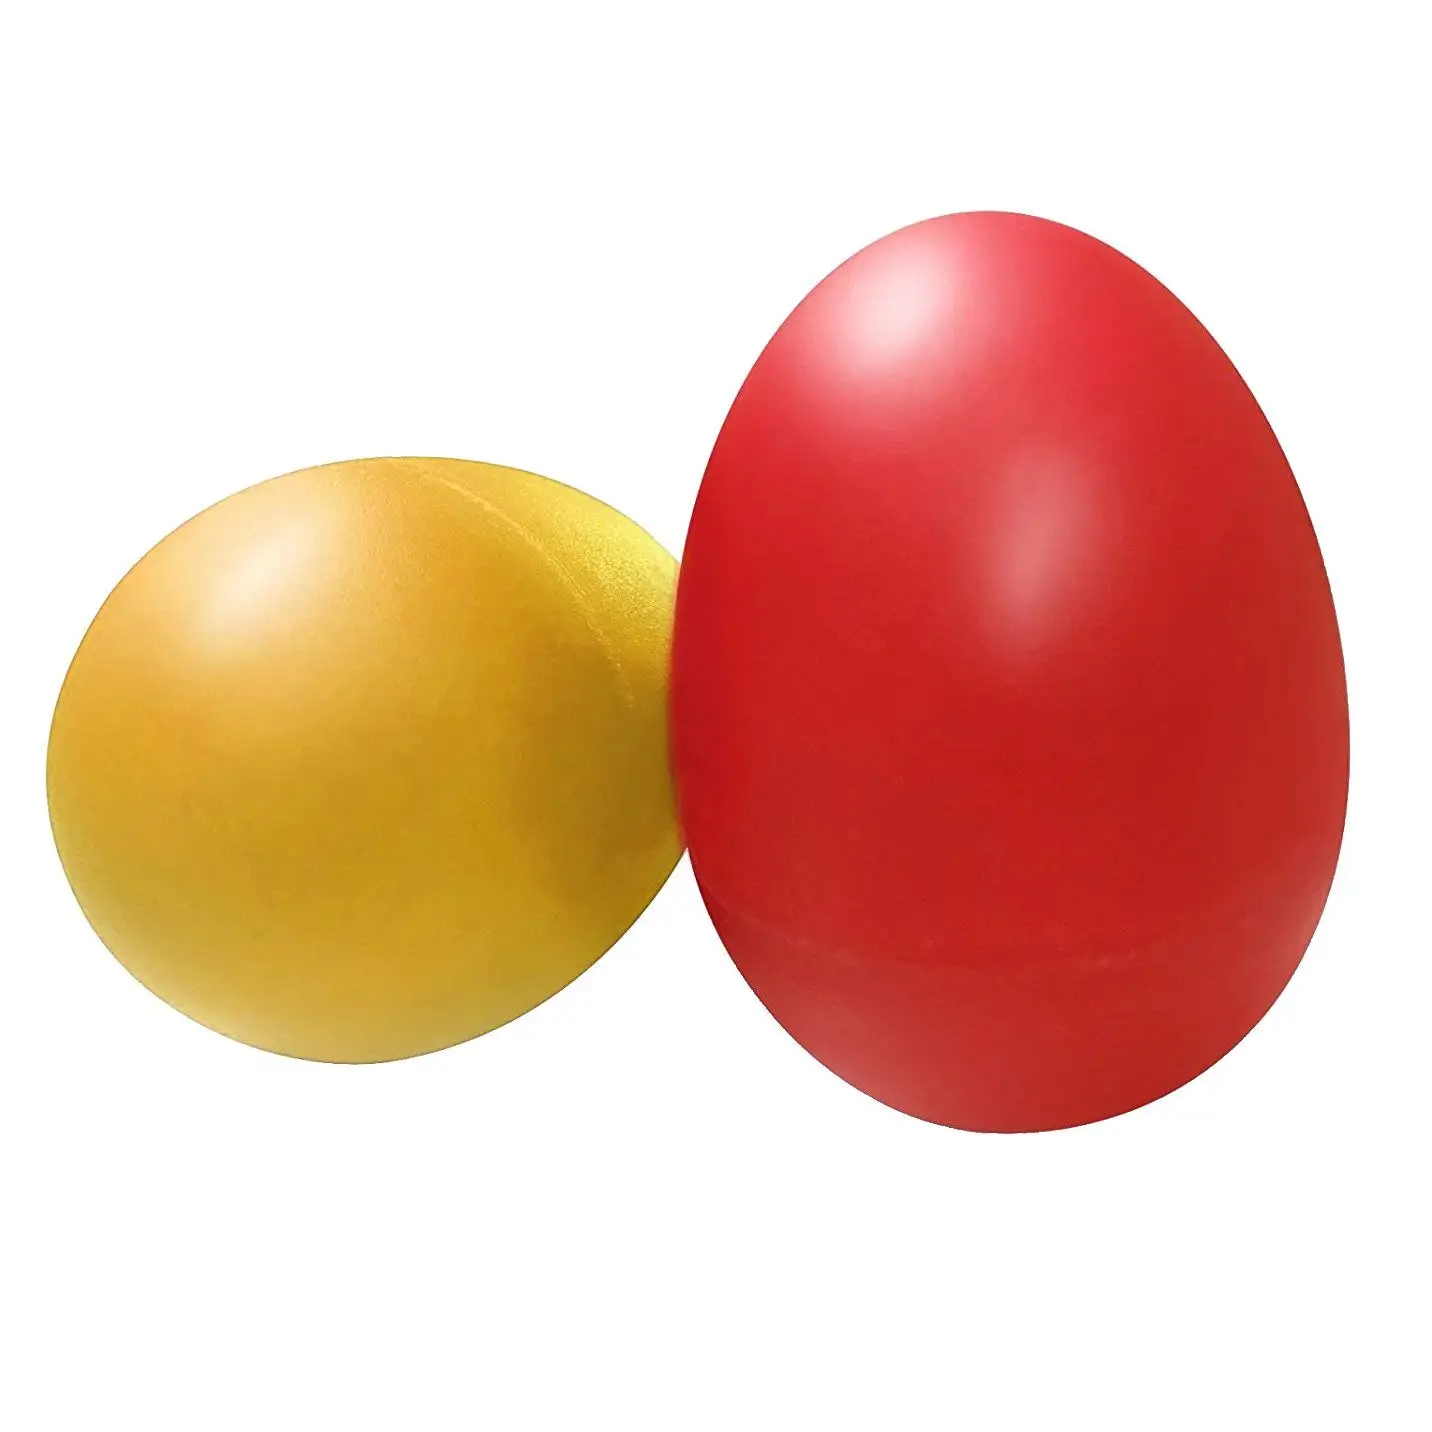 8 шт игривые пластиковые Ударные музыкальное яйцо Маракас яичные Шейкеры Детские игрушки-4 различных цвета